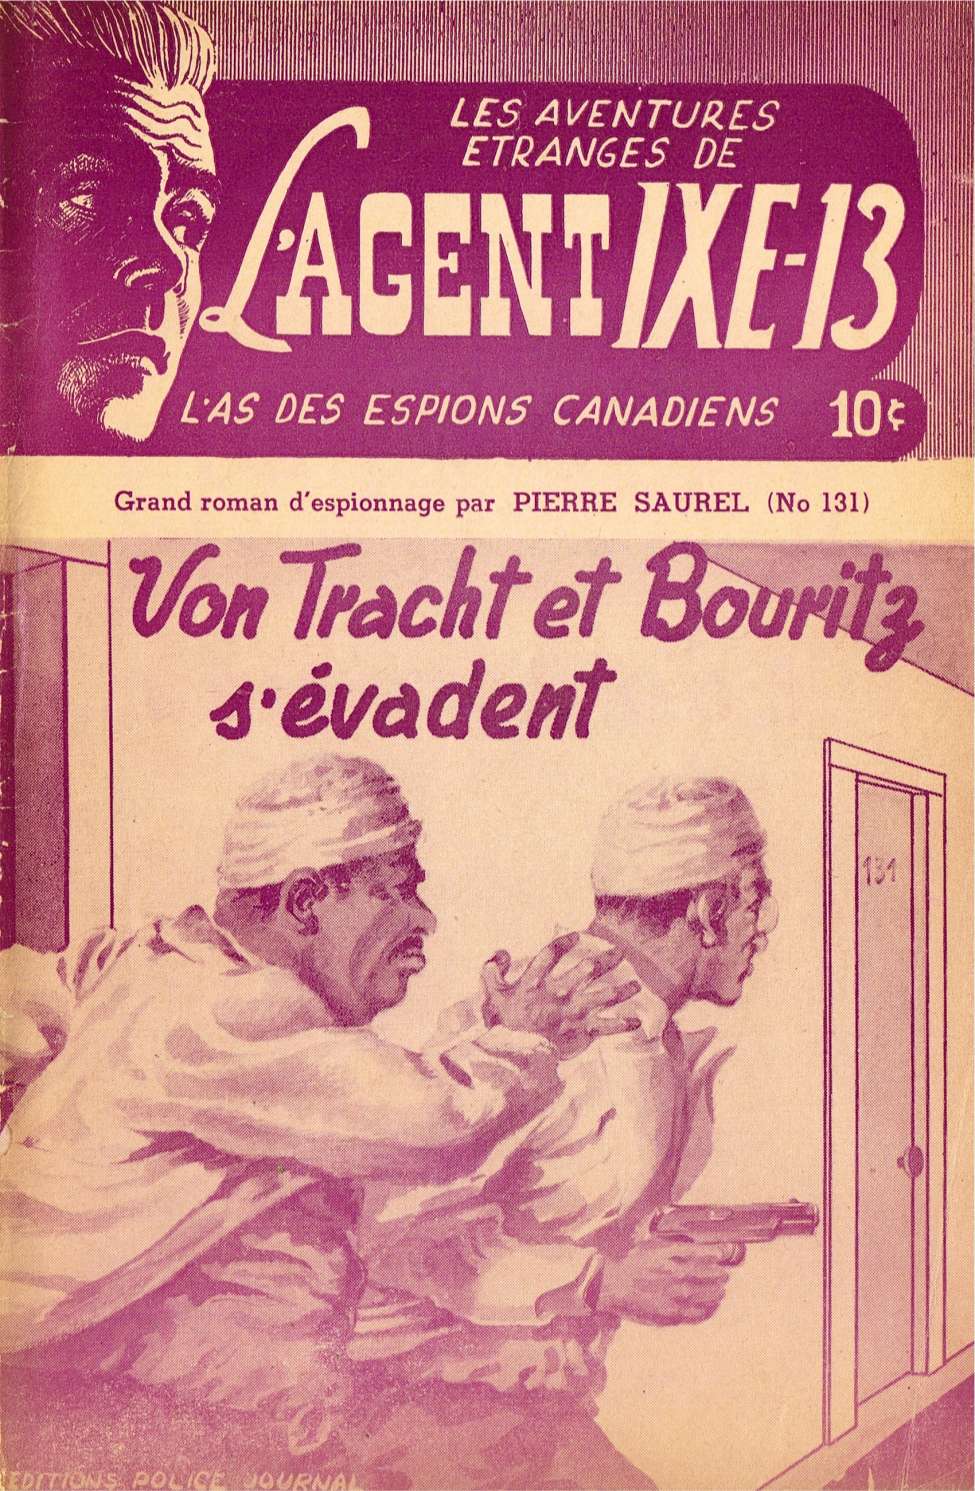 Comic Book Cover For L'Agent IXE-13 v2 131 - Von Tracht et Bouritz s'évadent